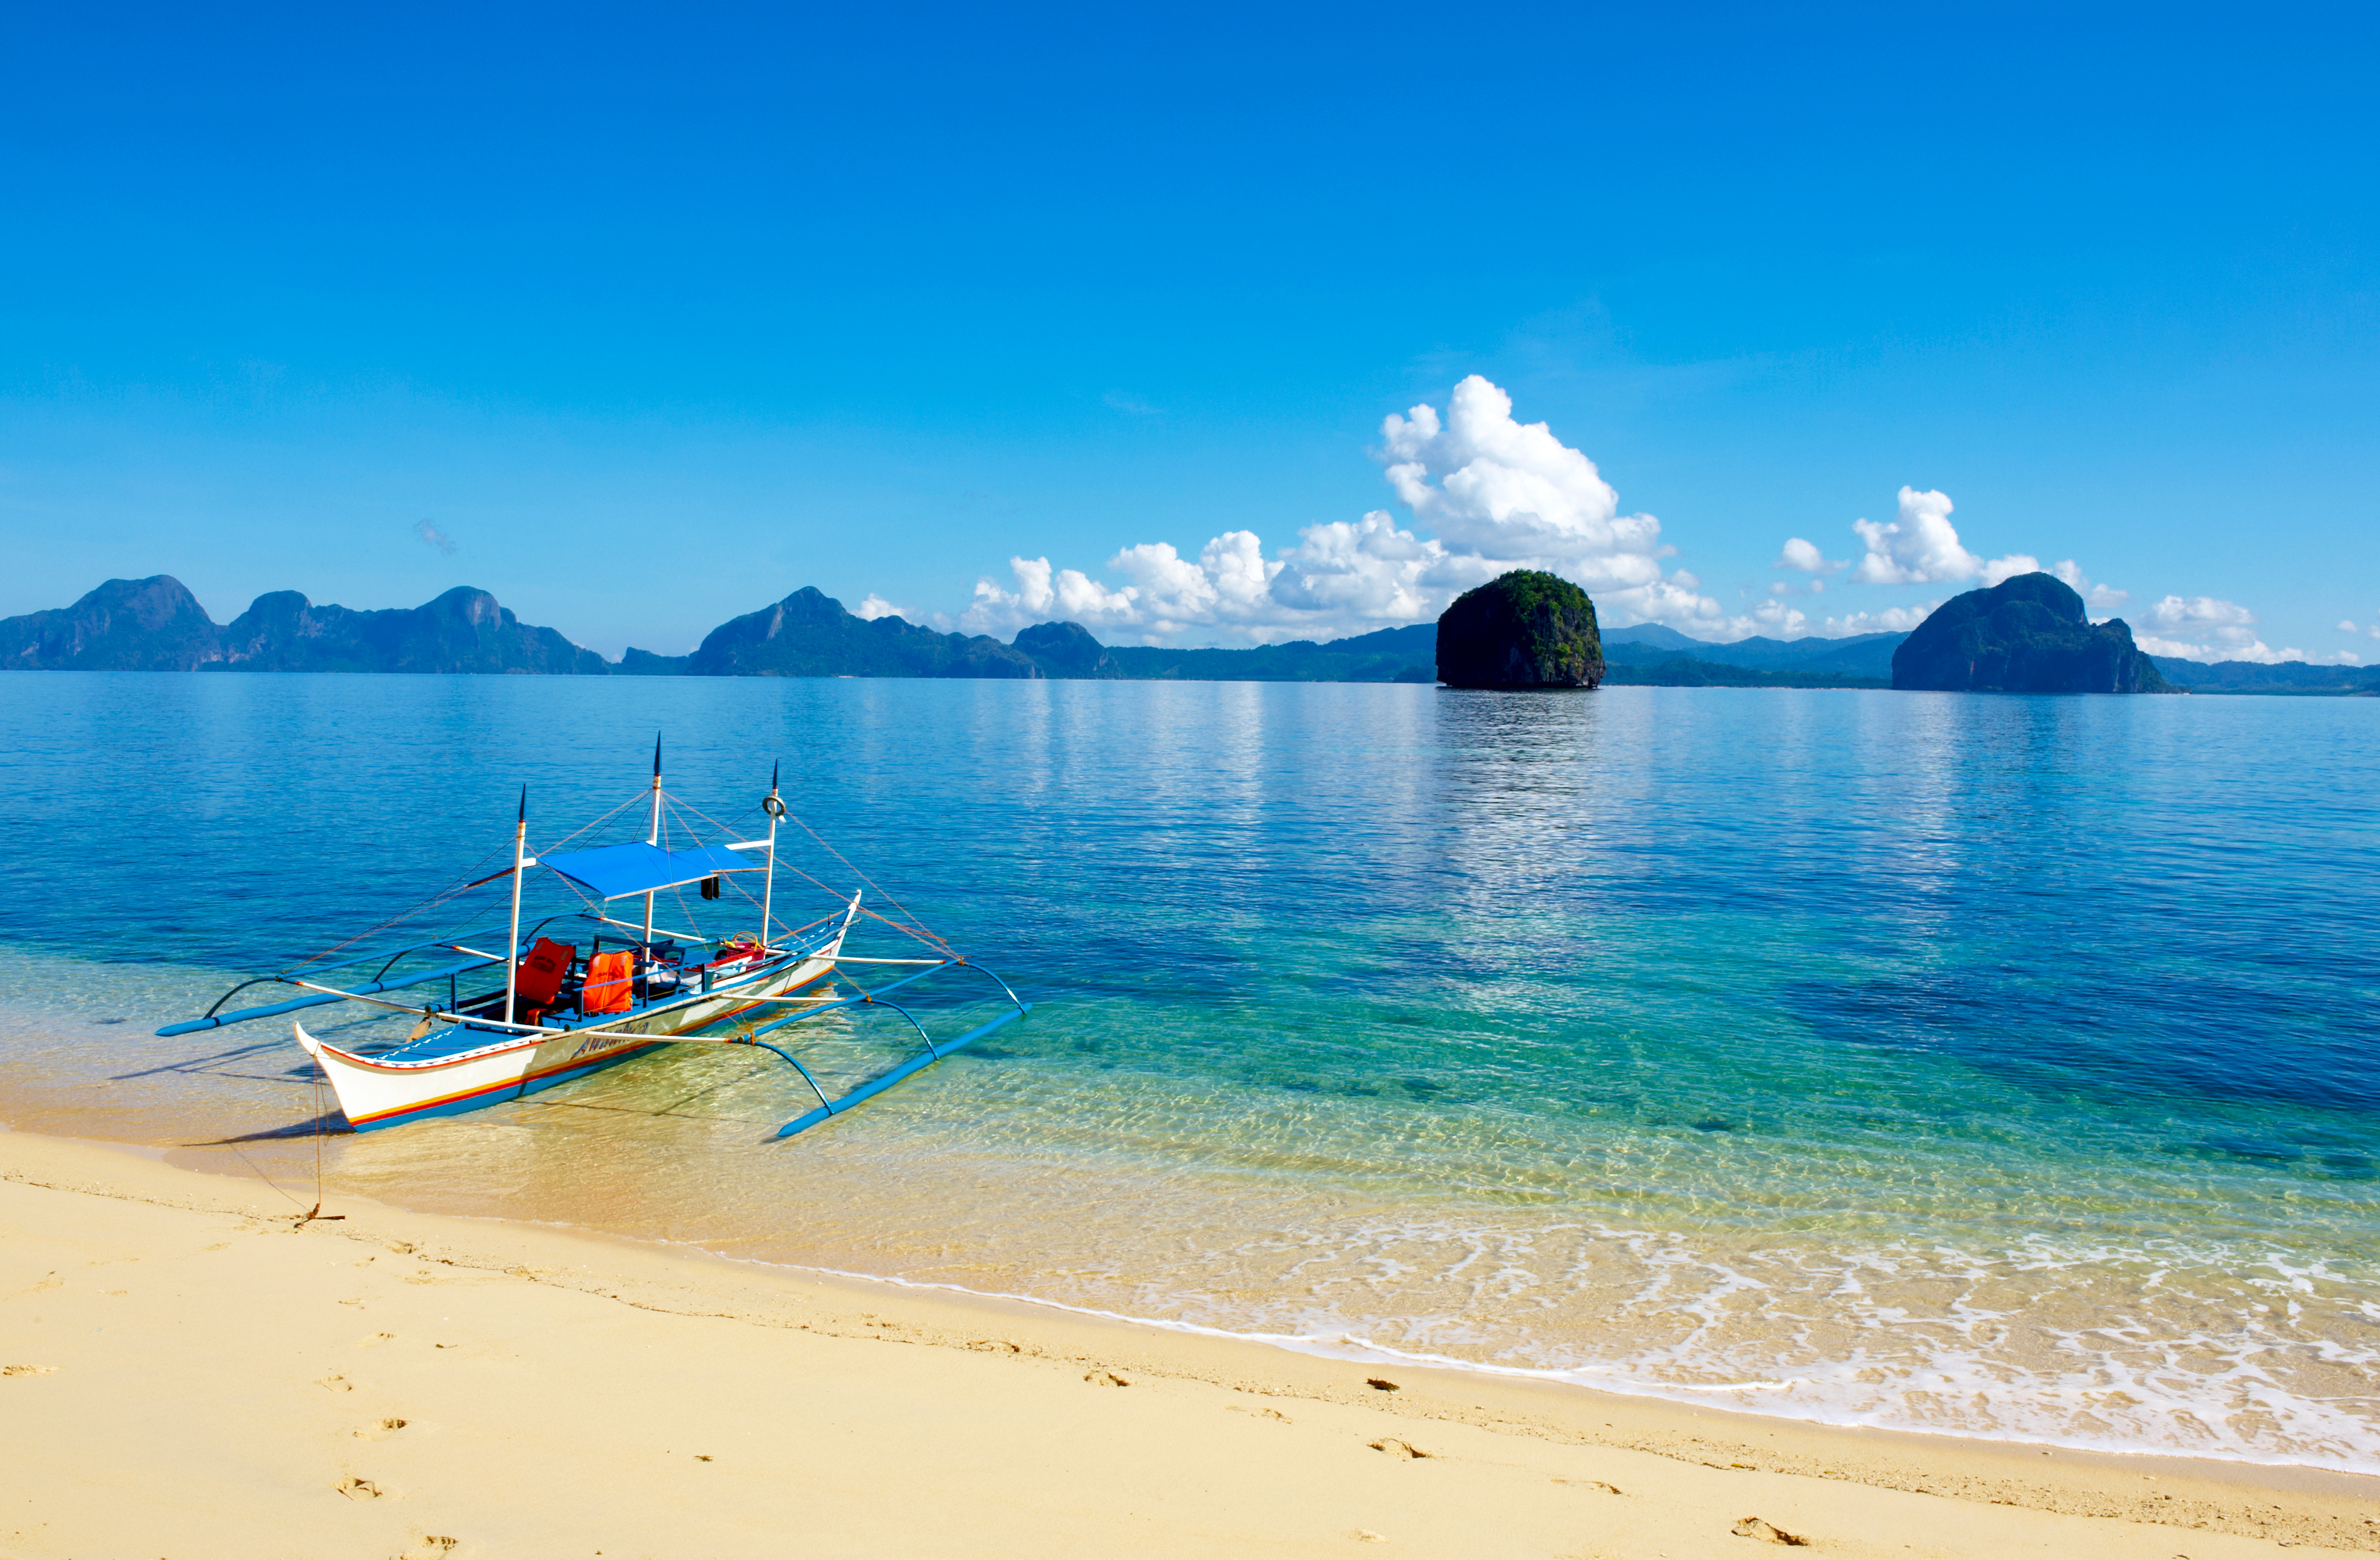 Boat island. Малайзия океан. Пляж. Таиланд море. Лодка на острове.